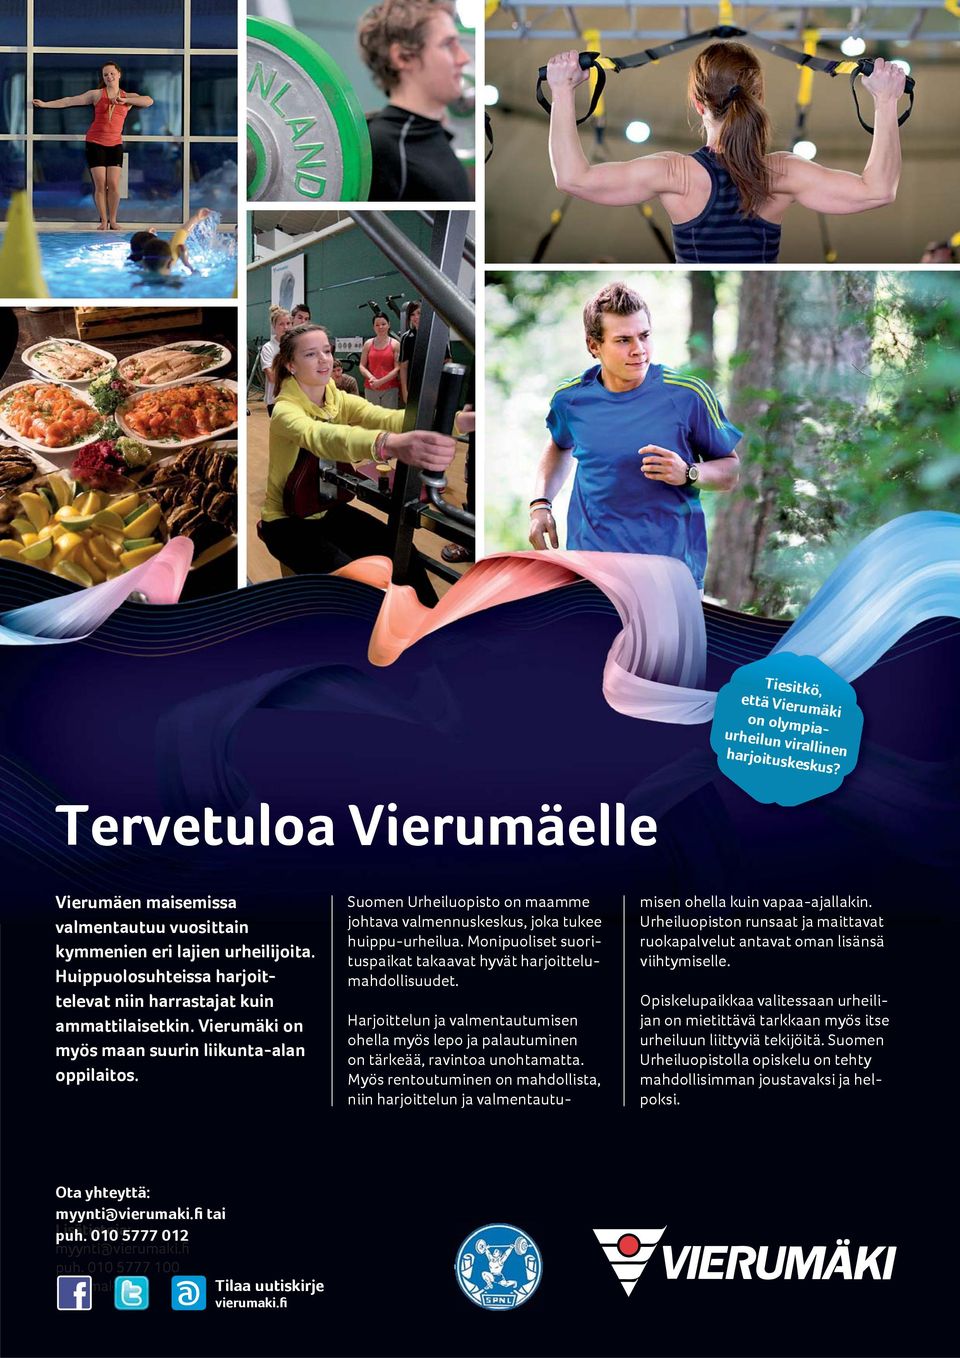 Suomen Urheiluopisto on maamme johtava valmennuskeskus, joka tukee huippu-urheilua. Monipuoliset suorituspaikat takaavat hyvät harjoittelumahdollisuudet.